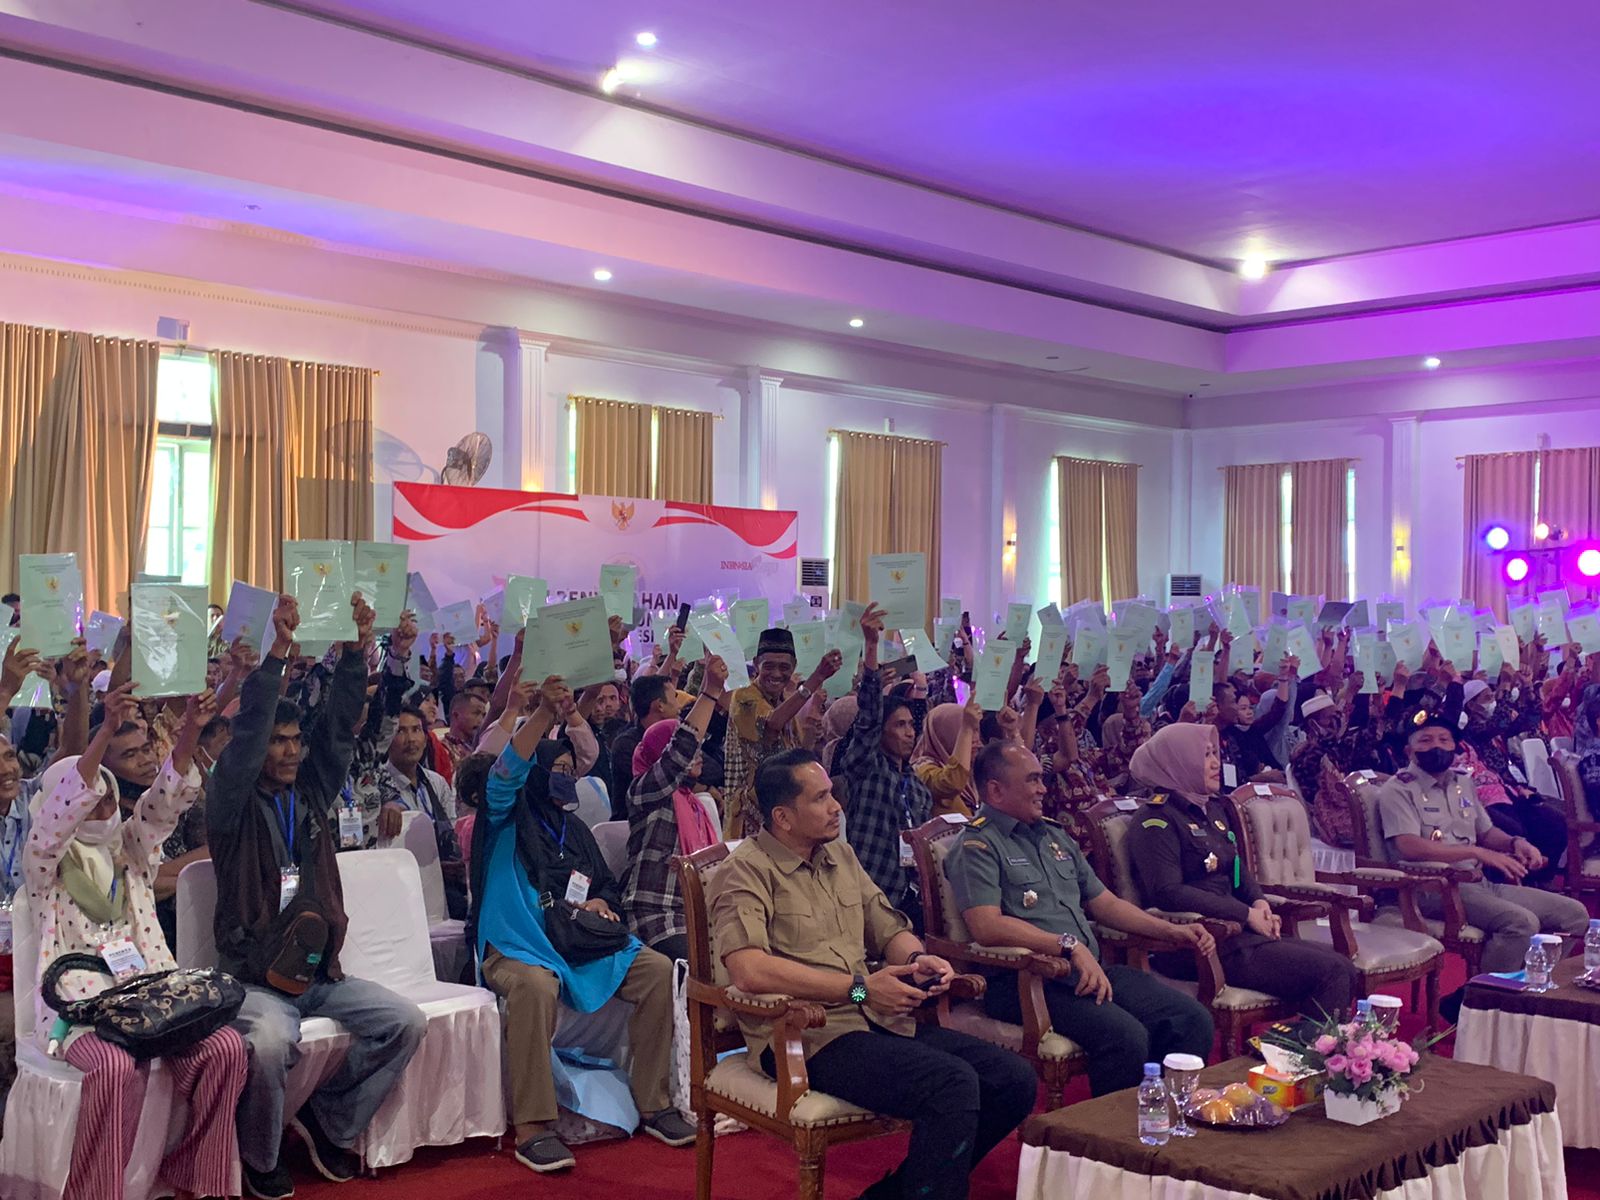 500 Masyarakat Provinsi Jambi Terima Sertifikat Tanah Secara Virtual dari Presiden Jokowi